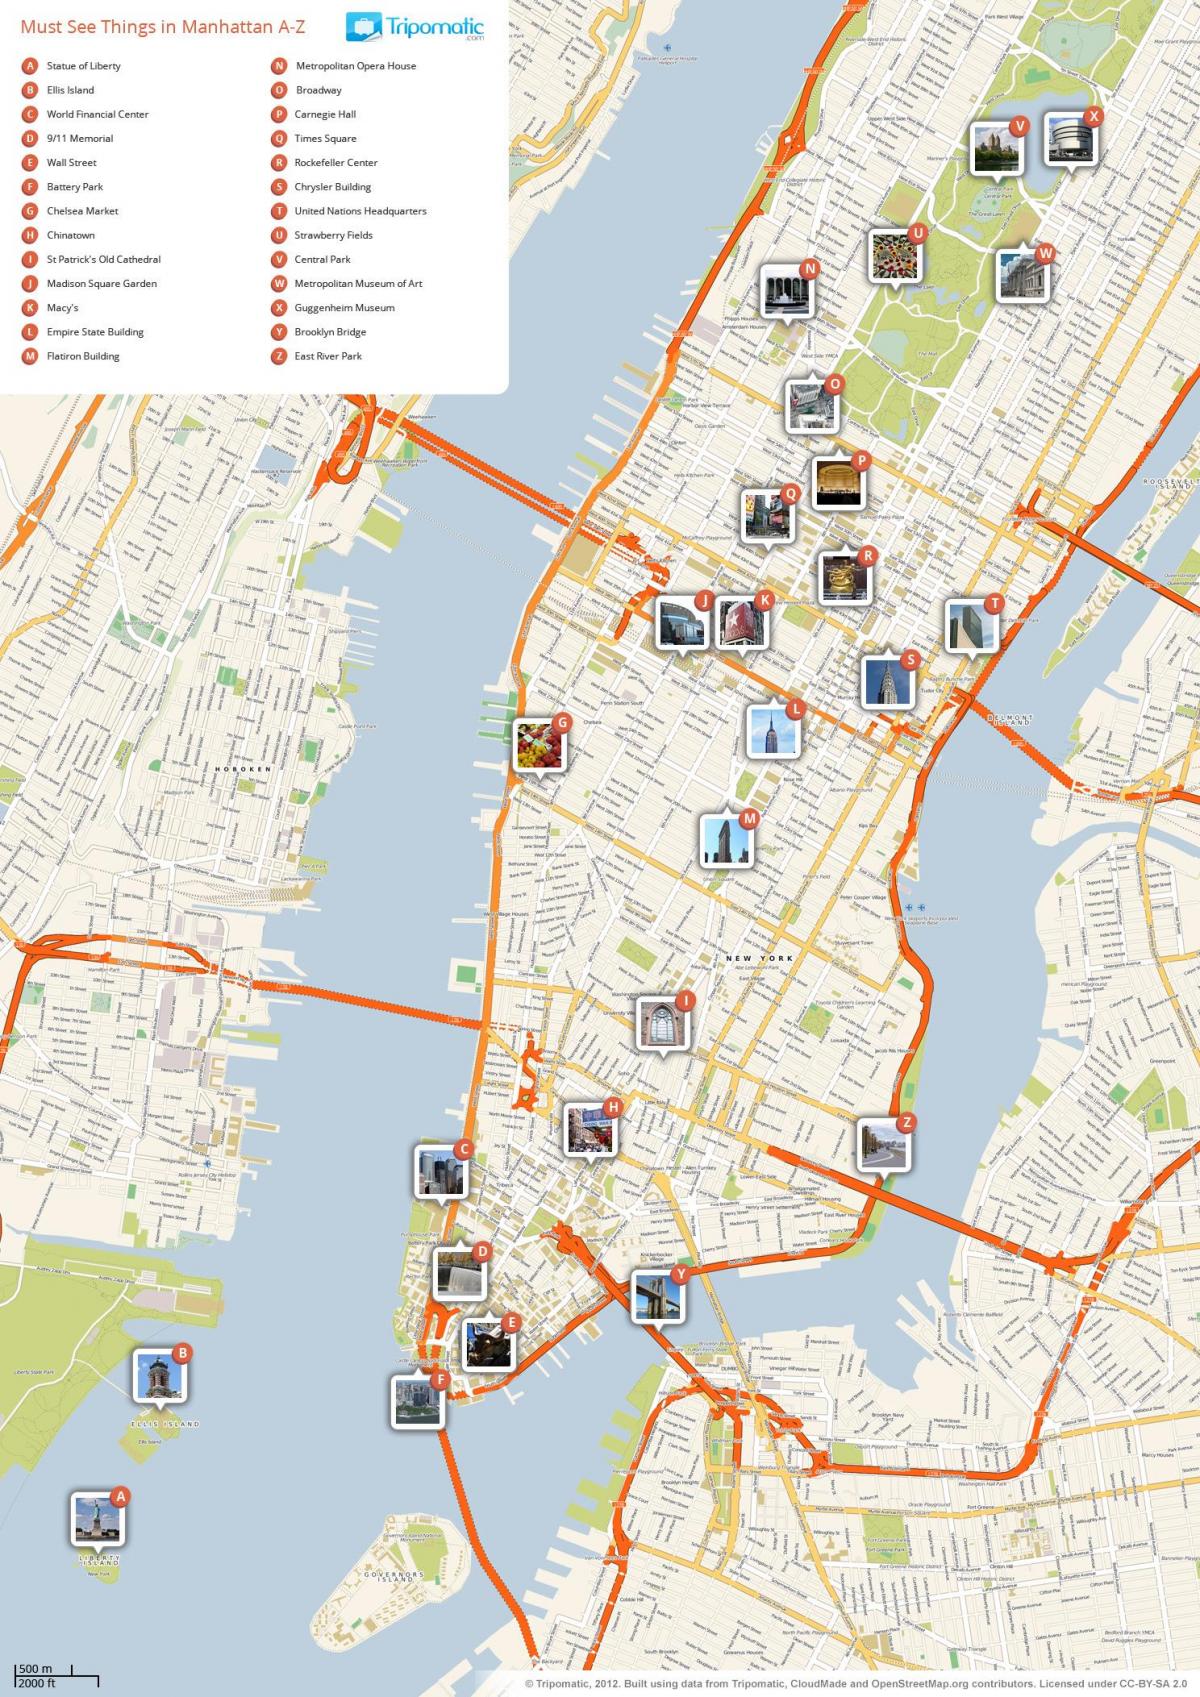 zemljevid Manhattan, ki prikazuje turističnih znamenitosti.